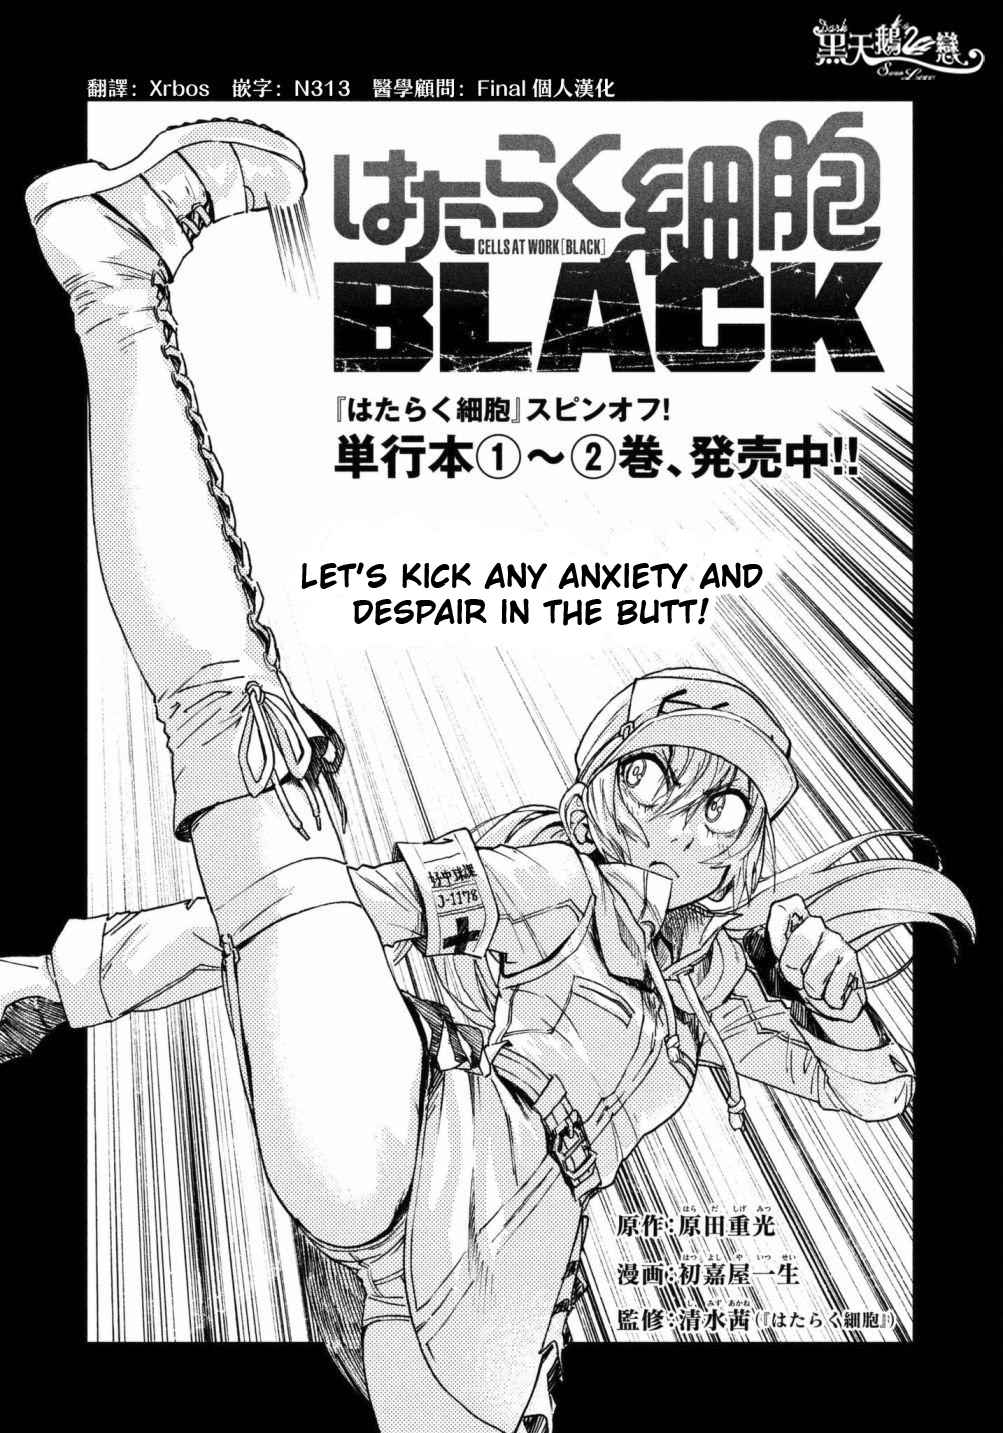 Hataraku Saibou Black Vol. 3 Ch. 15 Sebum, Nonenal , The Final Task